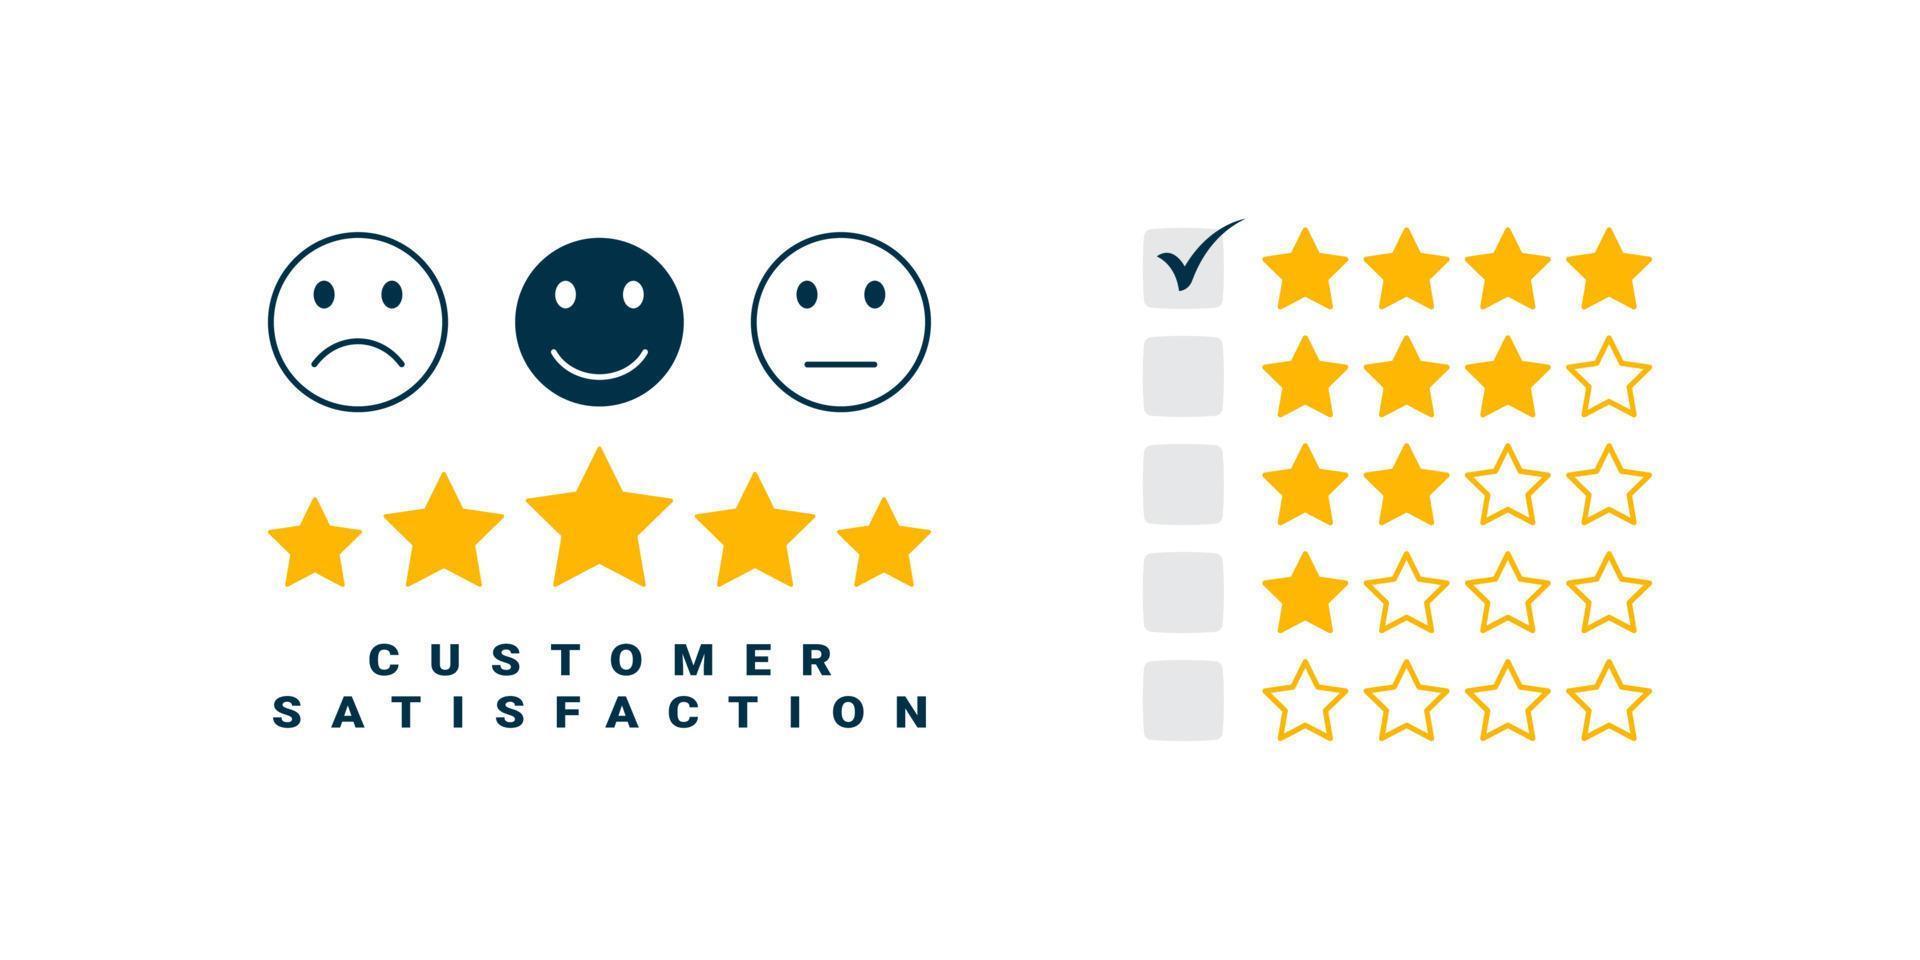 Bewertung zur Serviceerfahrung. Symbole für Zufriedenheitsumfragen. Feedback-Umfragekonzept zur Zufriedenheit der Kundenbewertung. Vektor-Illustration vektor